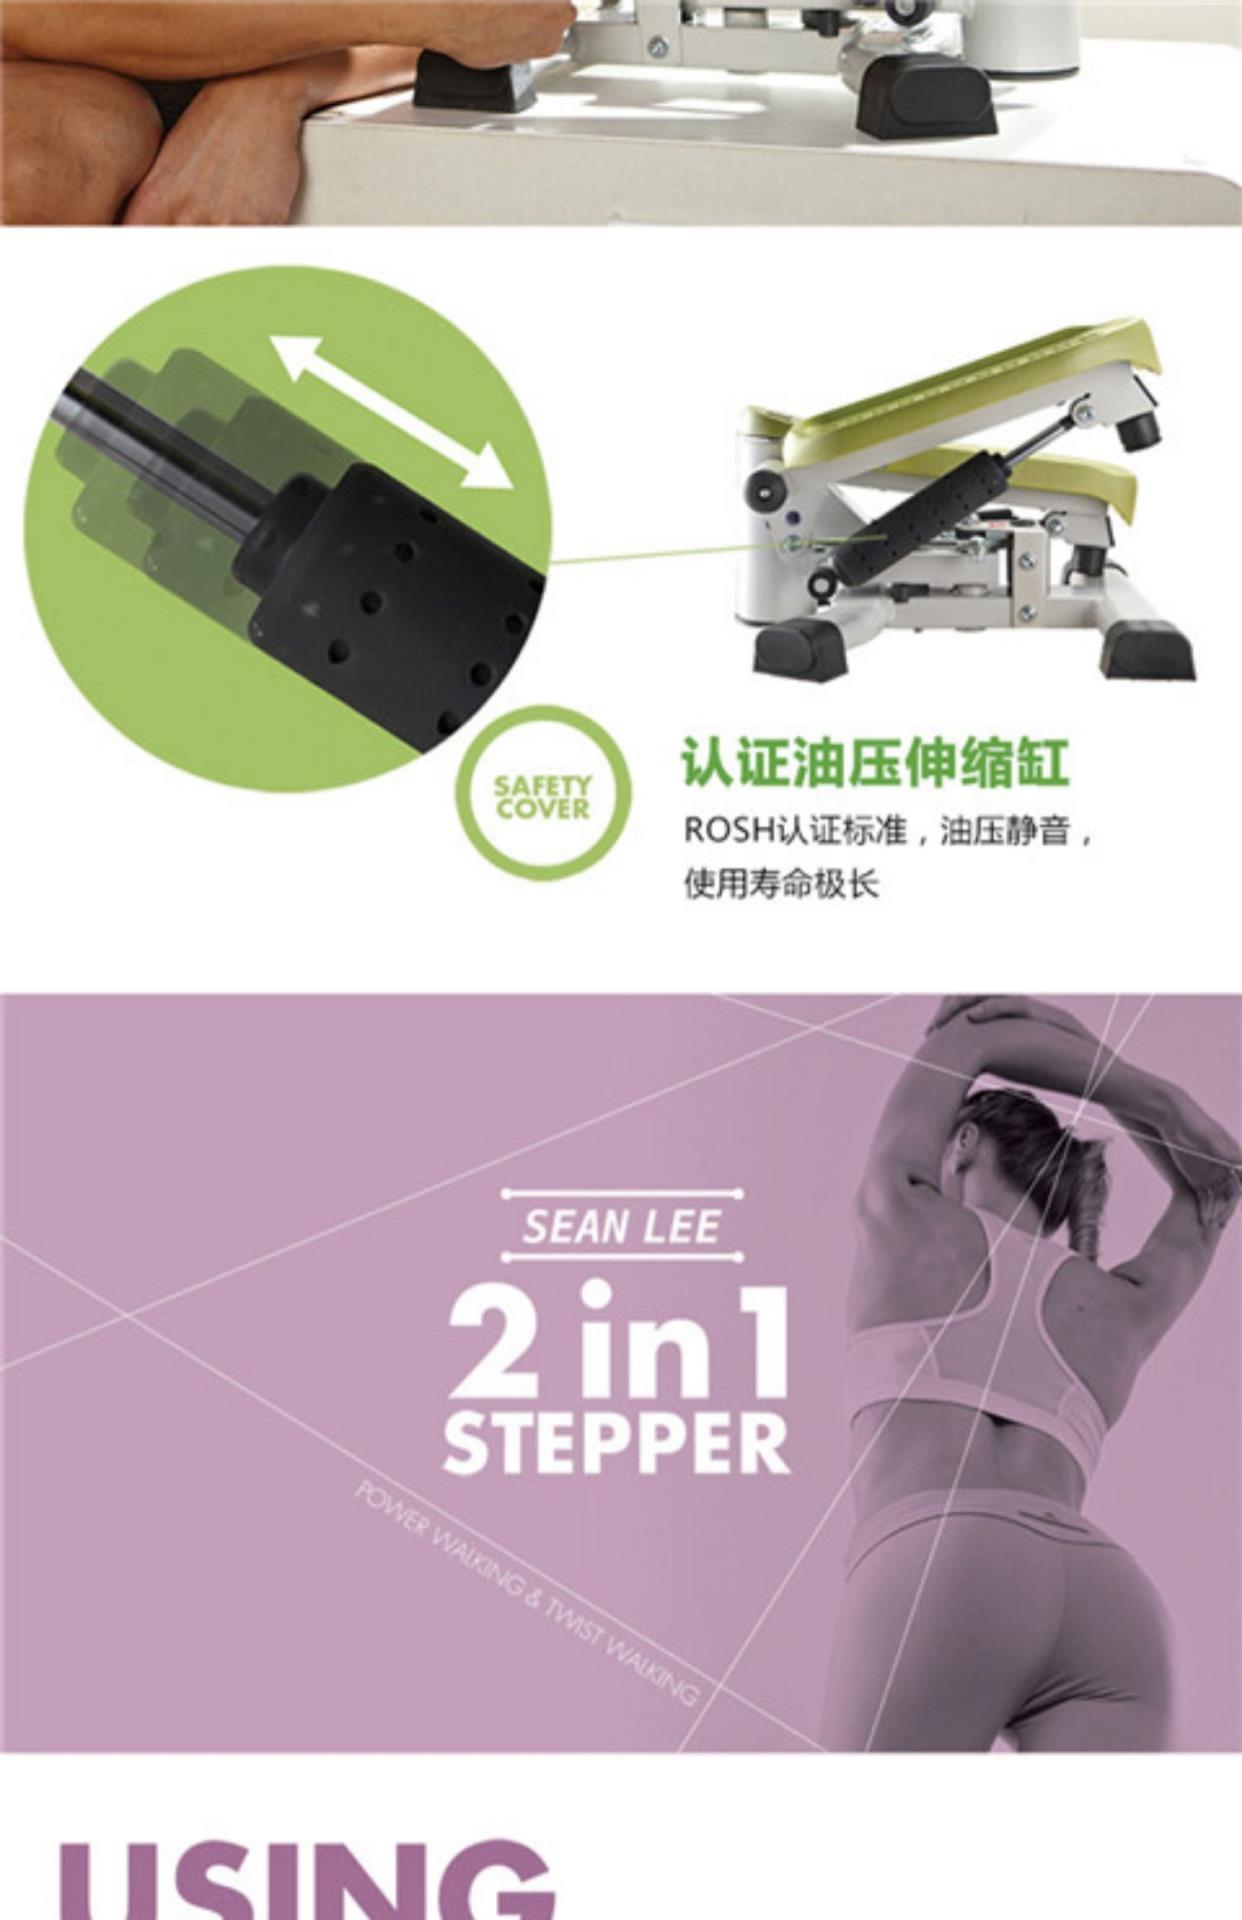 Chính hãng Stepper Home Mute Máy giảm cân chính hãng Máy tập thể dục Thiết bị tập thể dục Thin Waist Artifact Pedal - Stepper / thiết bị tập thể dục vừa và nhỏ